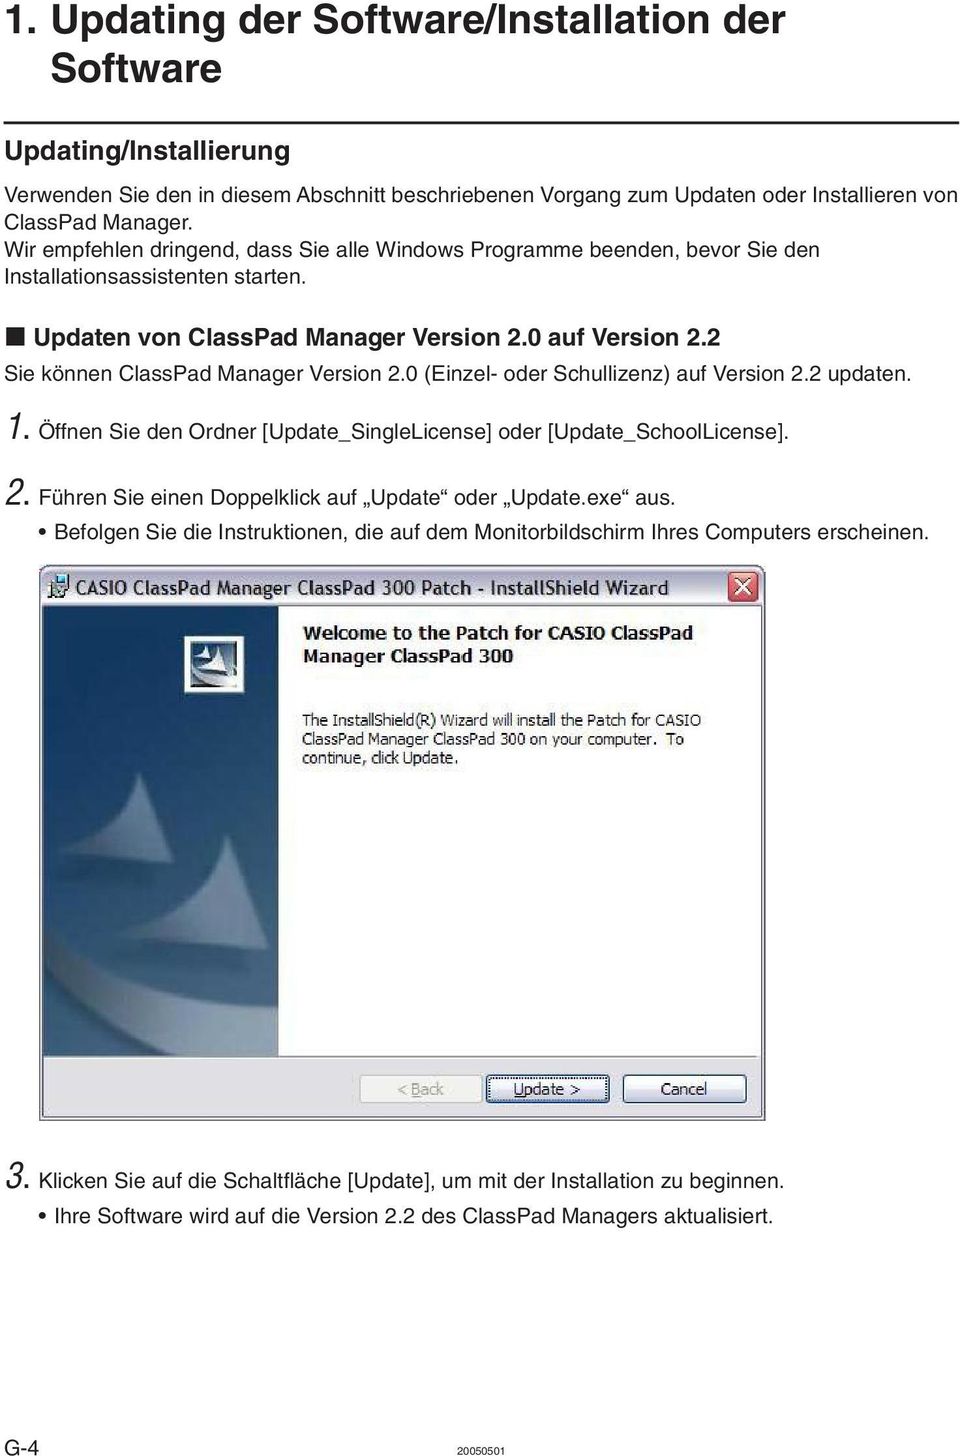 2 Sie können ClassPad Manager Version 2.0 (Einzel- oder Schullizenz) auf Version 2.2 updaten. 1. Öffnen Sie den Ordner [Update_SingleLicense] oder [Update_SchoolLicense]. 2. Führen Sie einen Doppelklick auf Update oder Update.